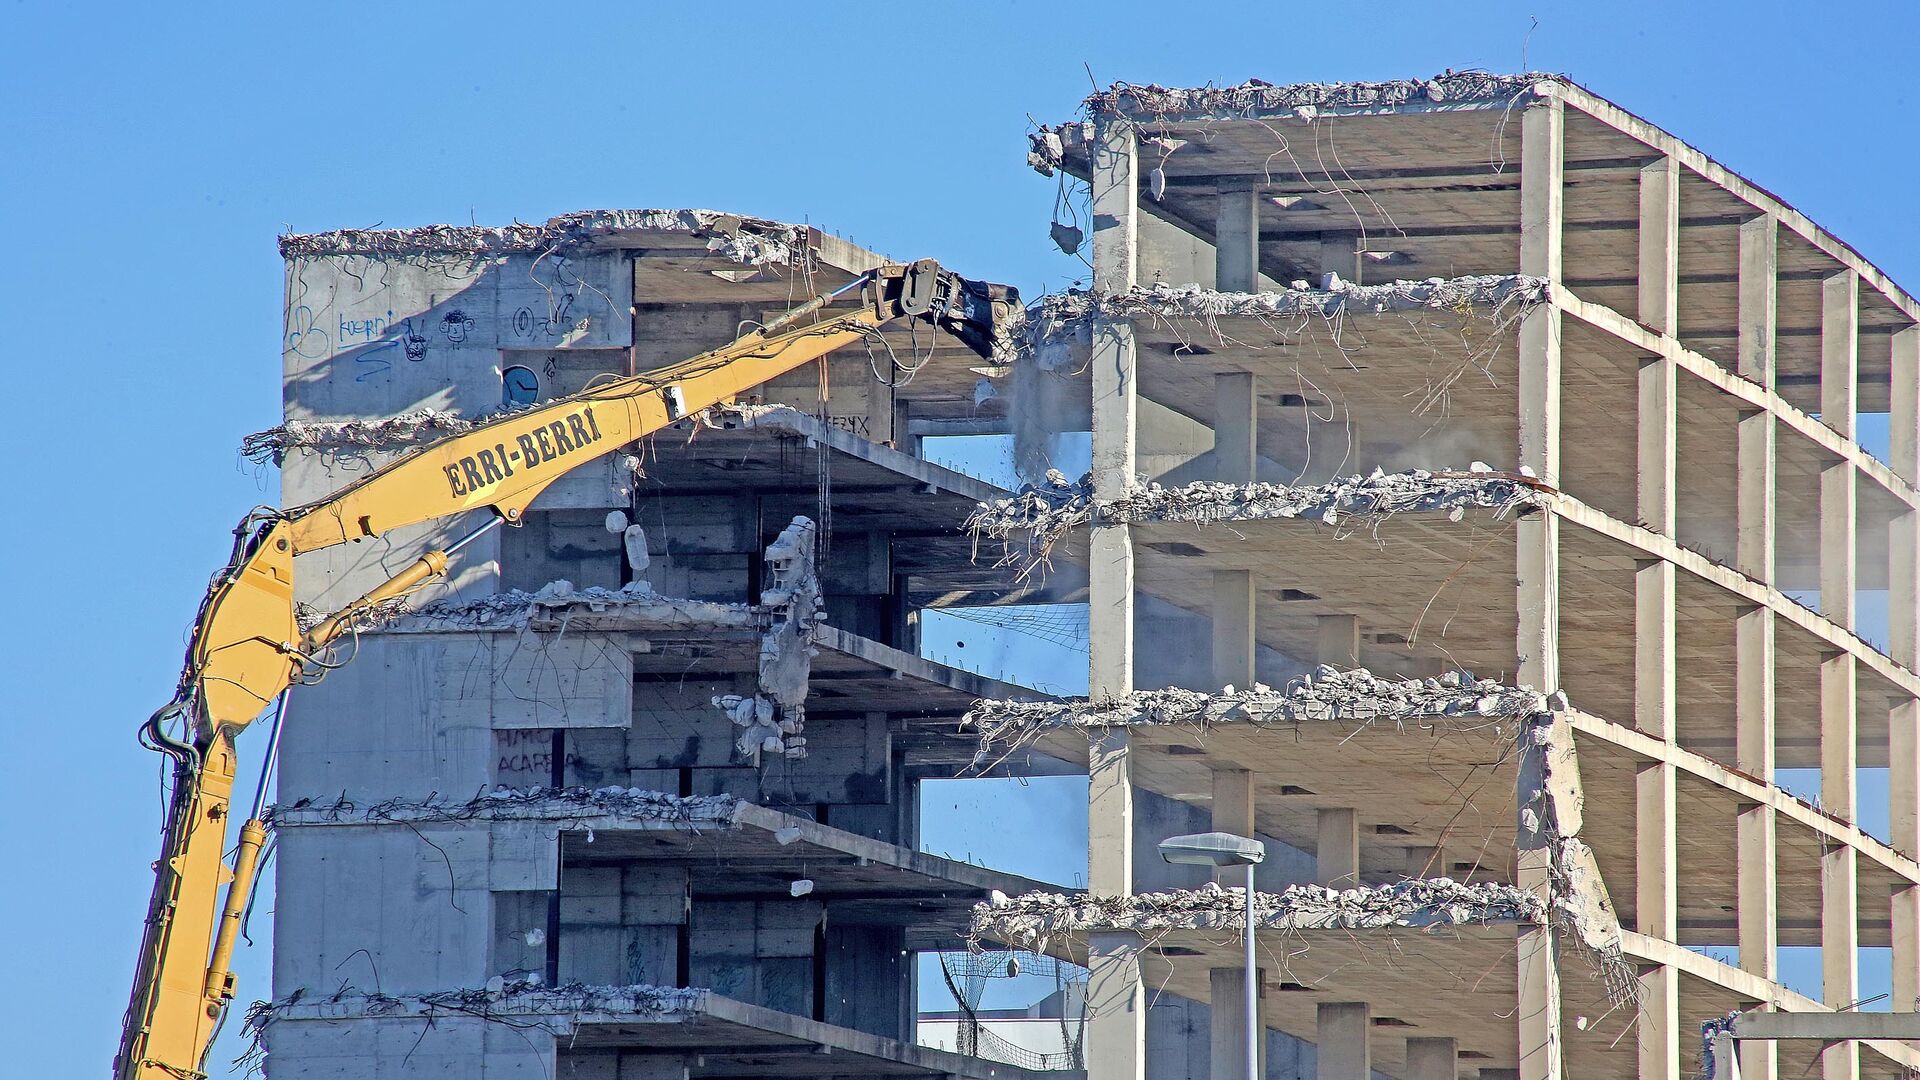 Comienza la demolici&oacute;n. A finales de noviembre de 2020 comienza la demolici&oacute;n de la superficie construida del Palacio, 17.235 metros cuadrados y un volumen de 7.207 metros c&uacute;bicos a cargo de la empresa Construcciones y Excavaciones Erri-Berri.